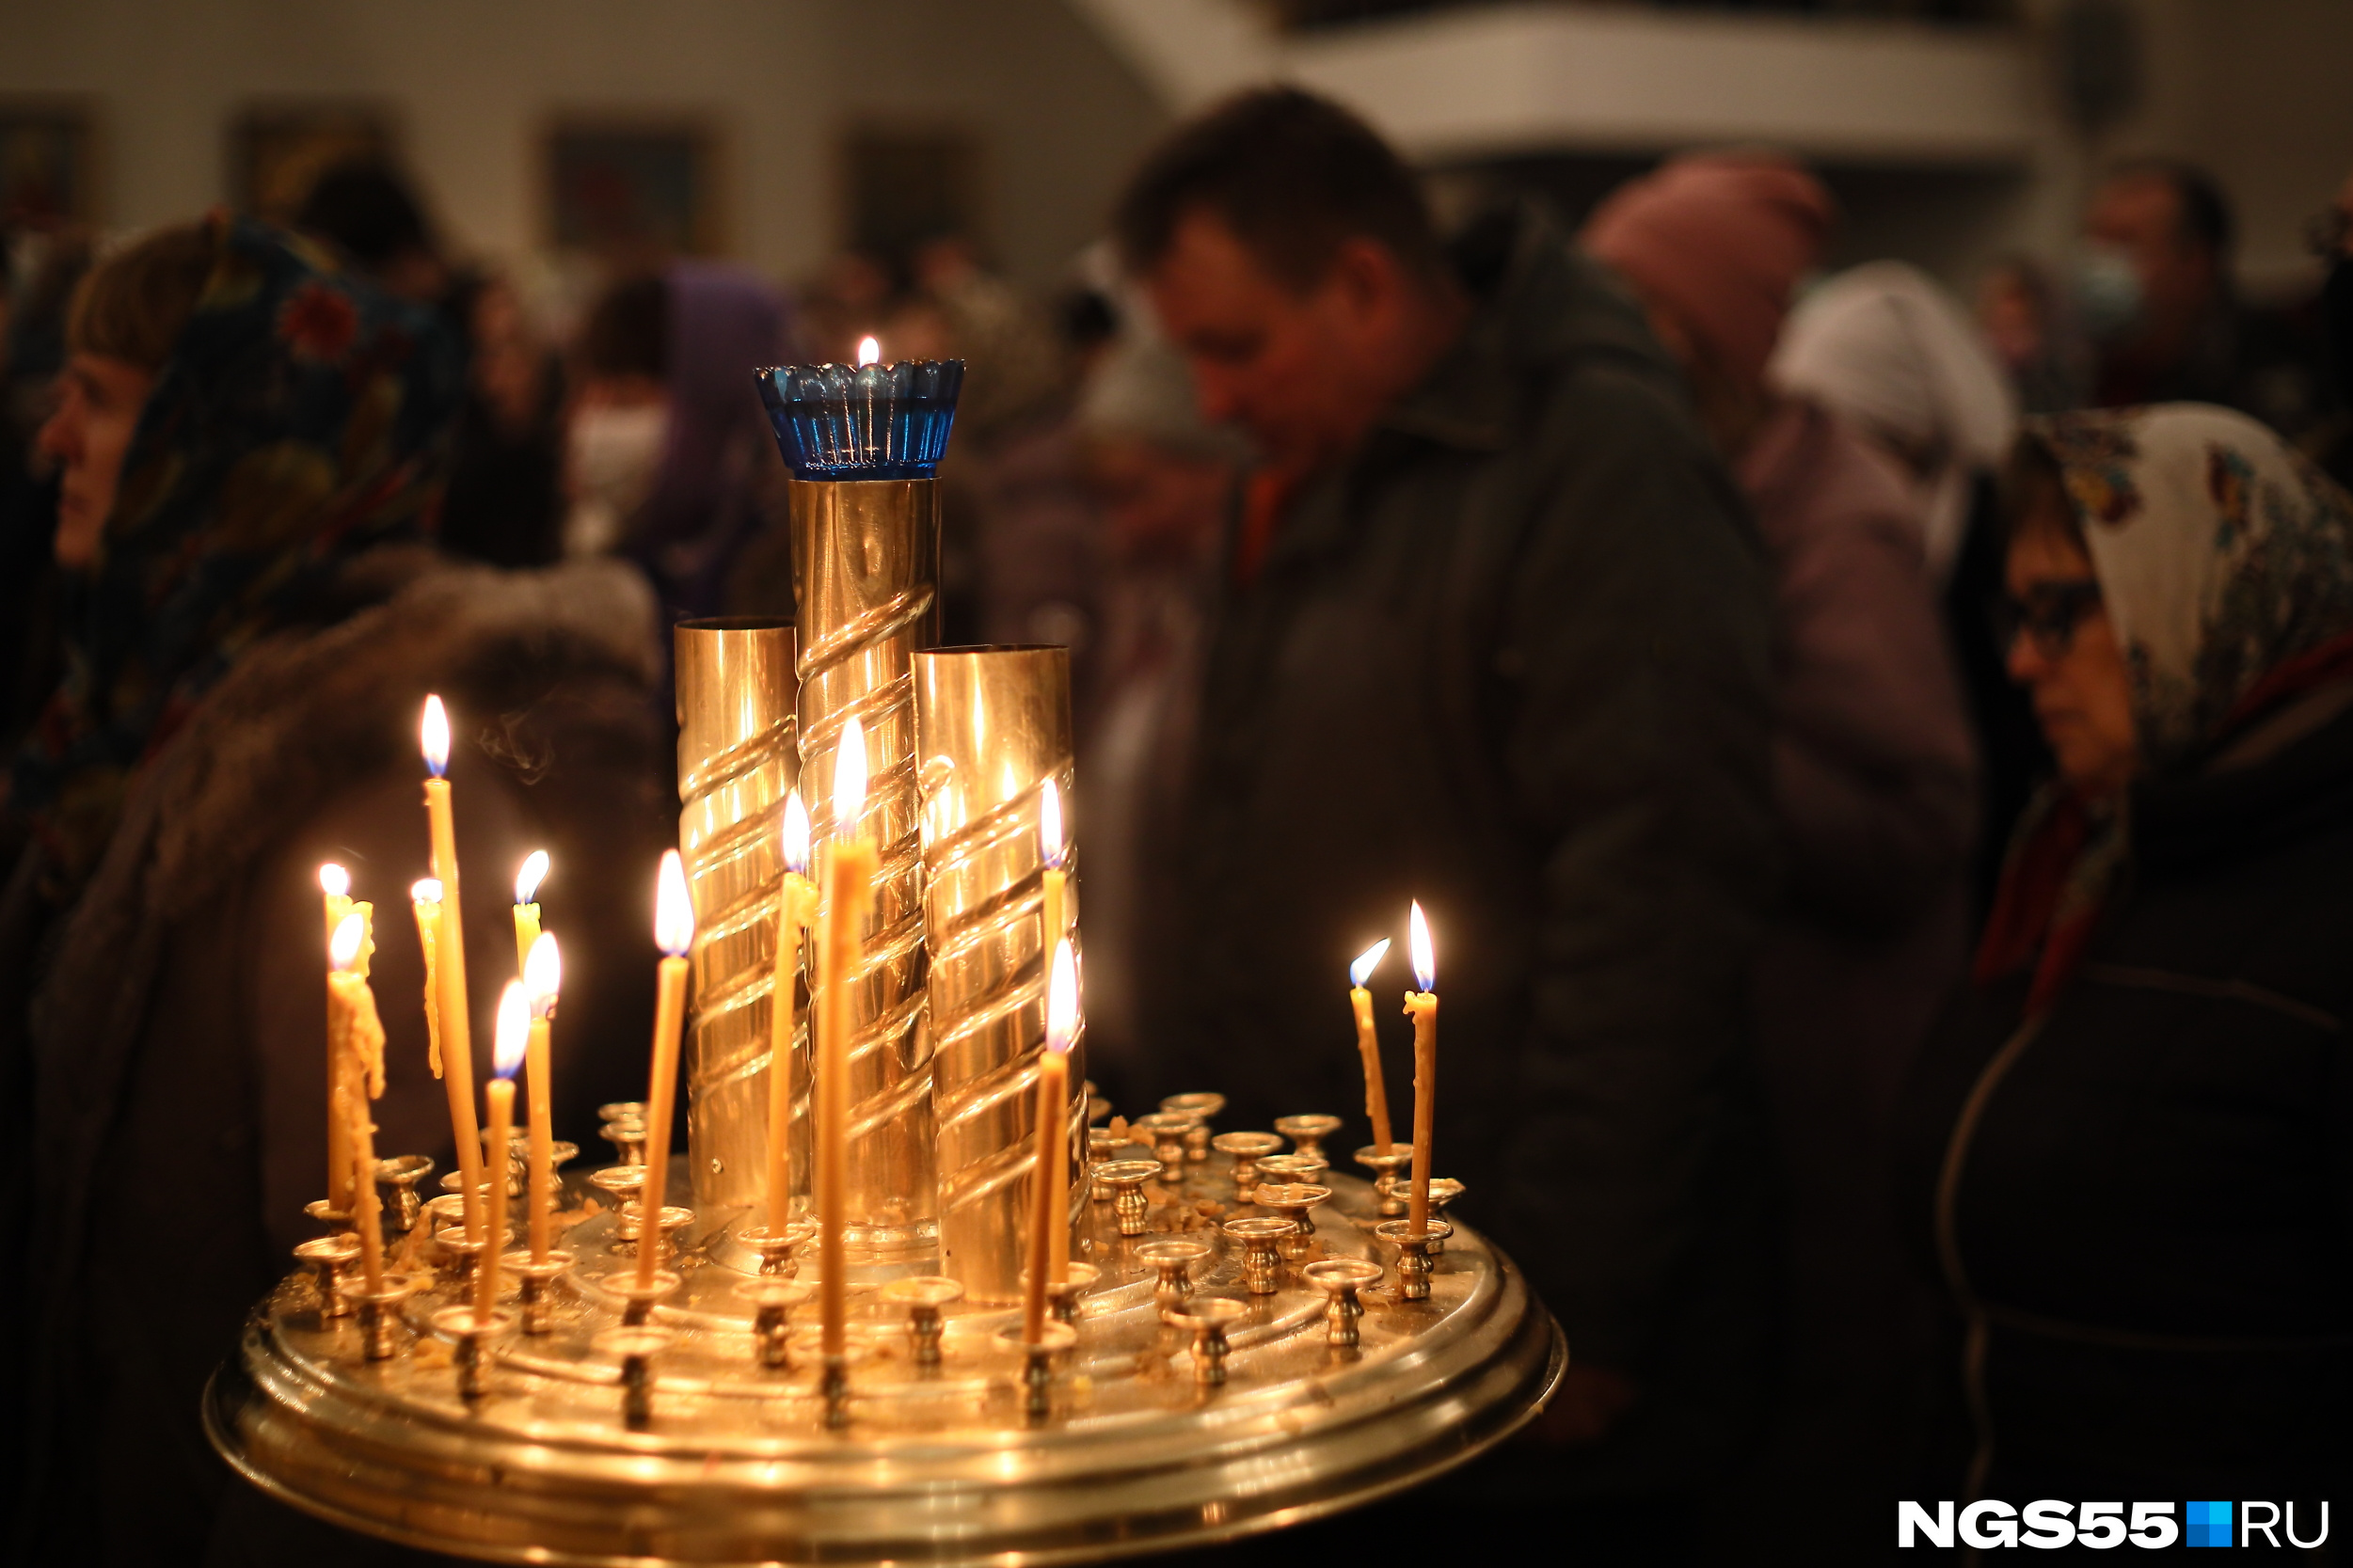 Редакция NGS55.RU также поздравляет всех православных с этим праздником